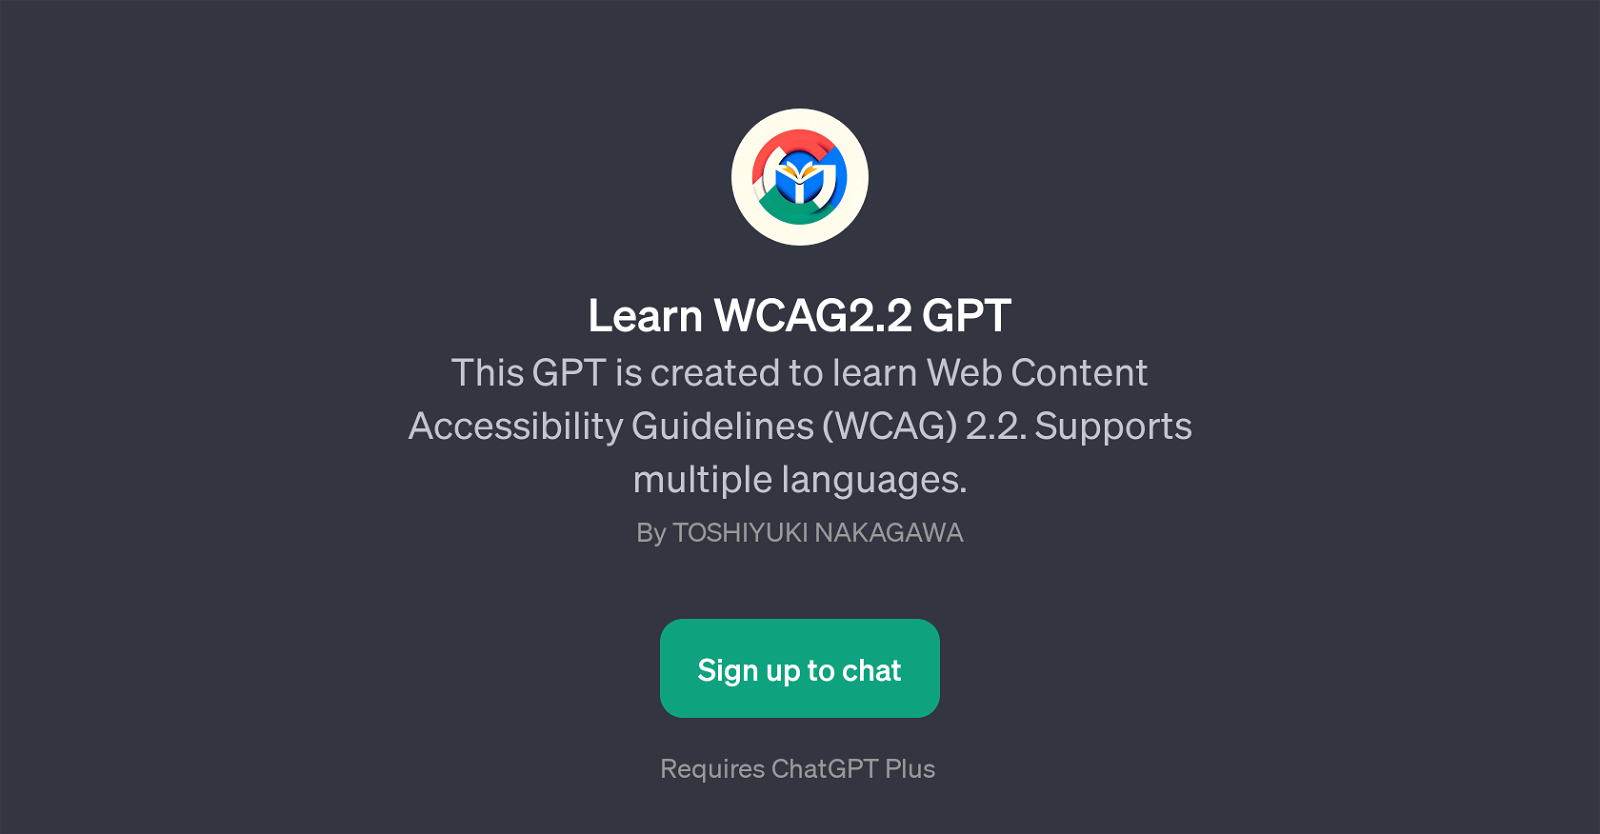 Learn WCAG2.2 GPT website